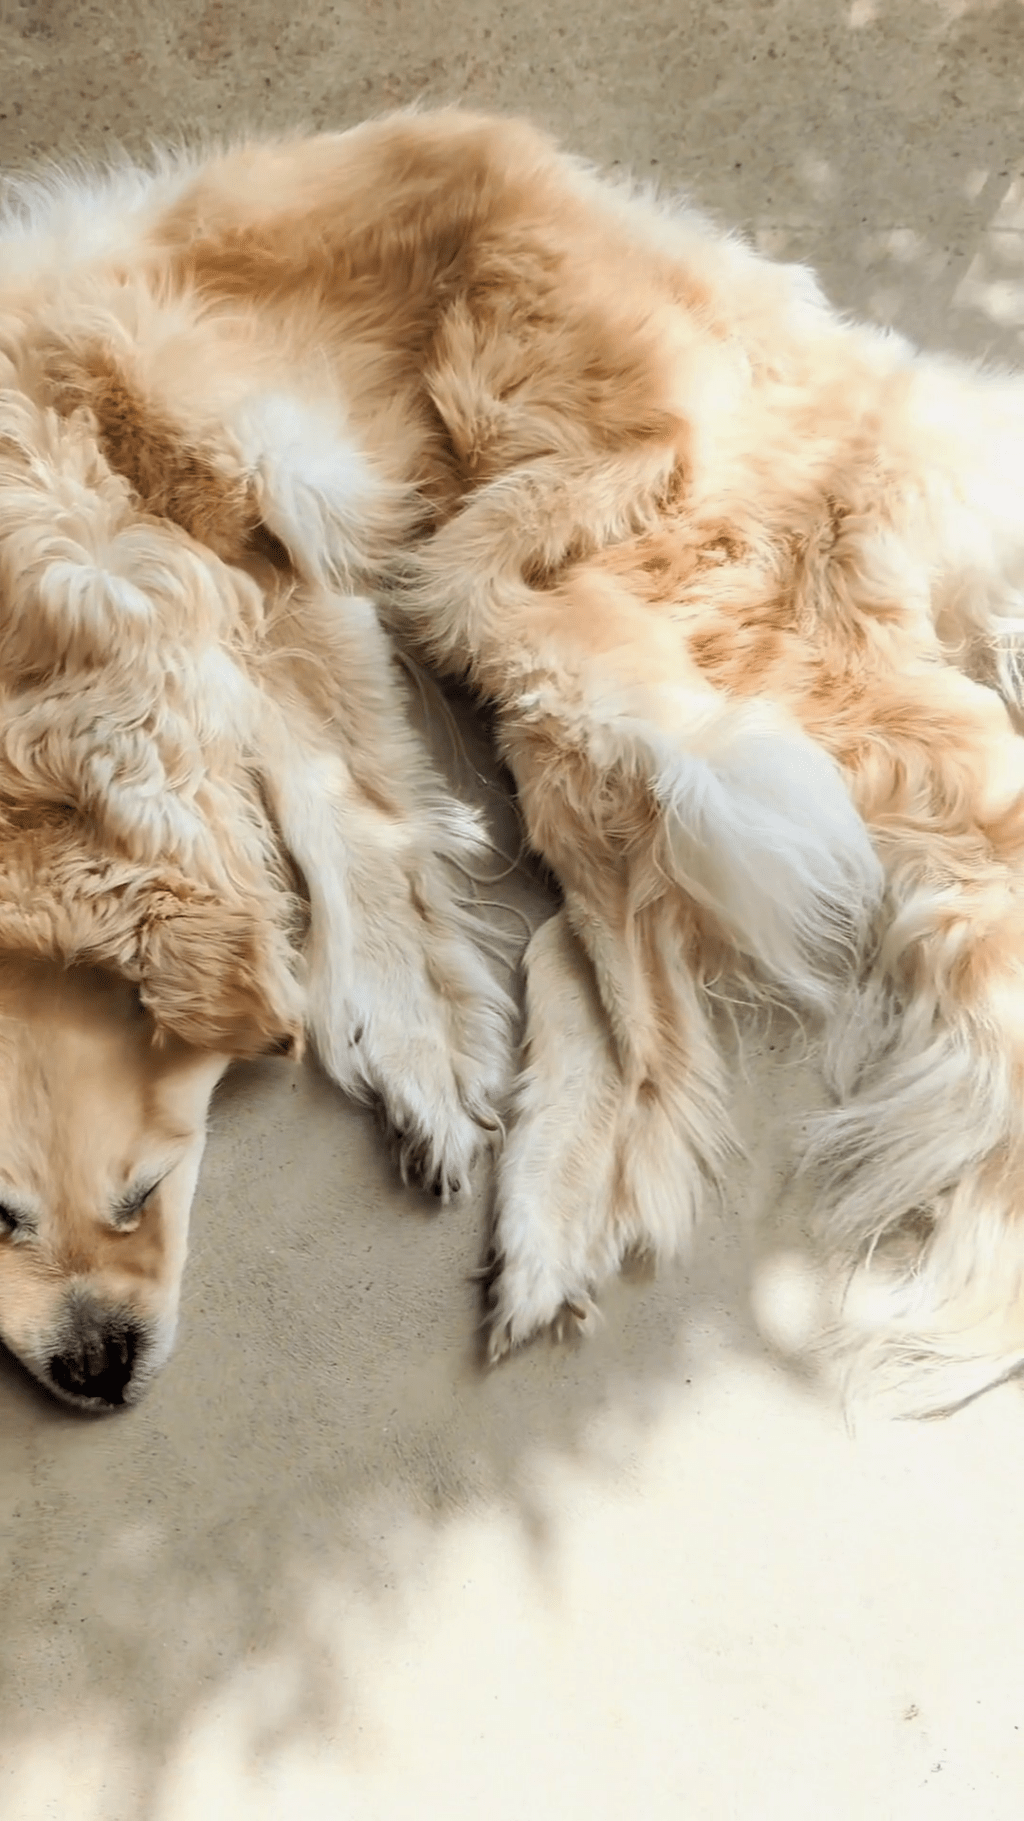 澳洲家庭將過世金毛尋回犬做成地毯，掀網上論戰。